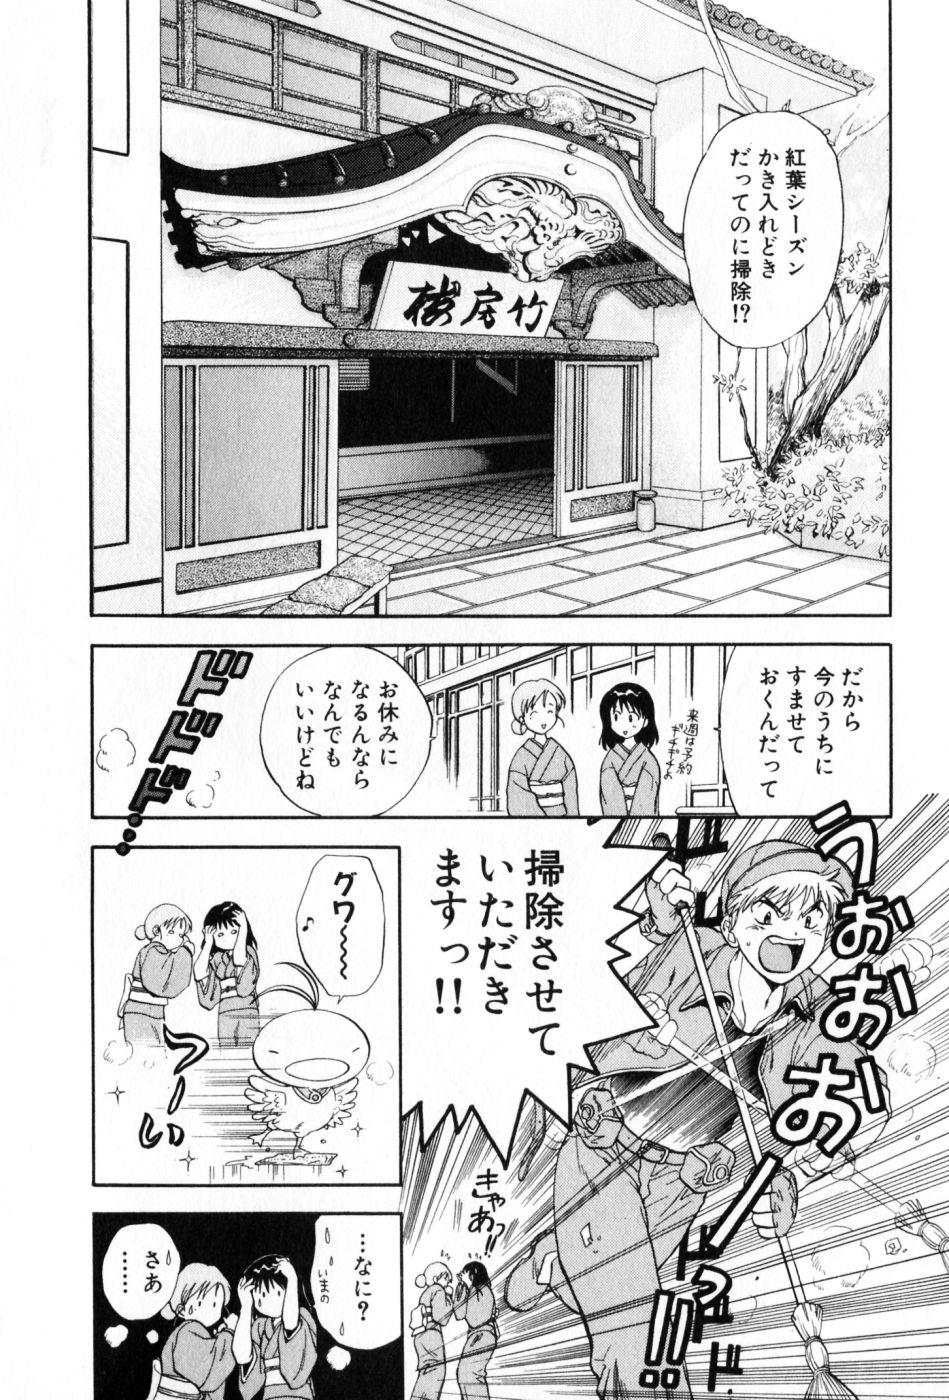 [Akane Nagano] Pawakuri 2 POWERFUL CLEANER [永野あかね] パワくり 2 POWERFUL CLEANER